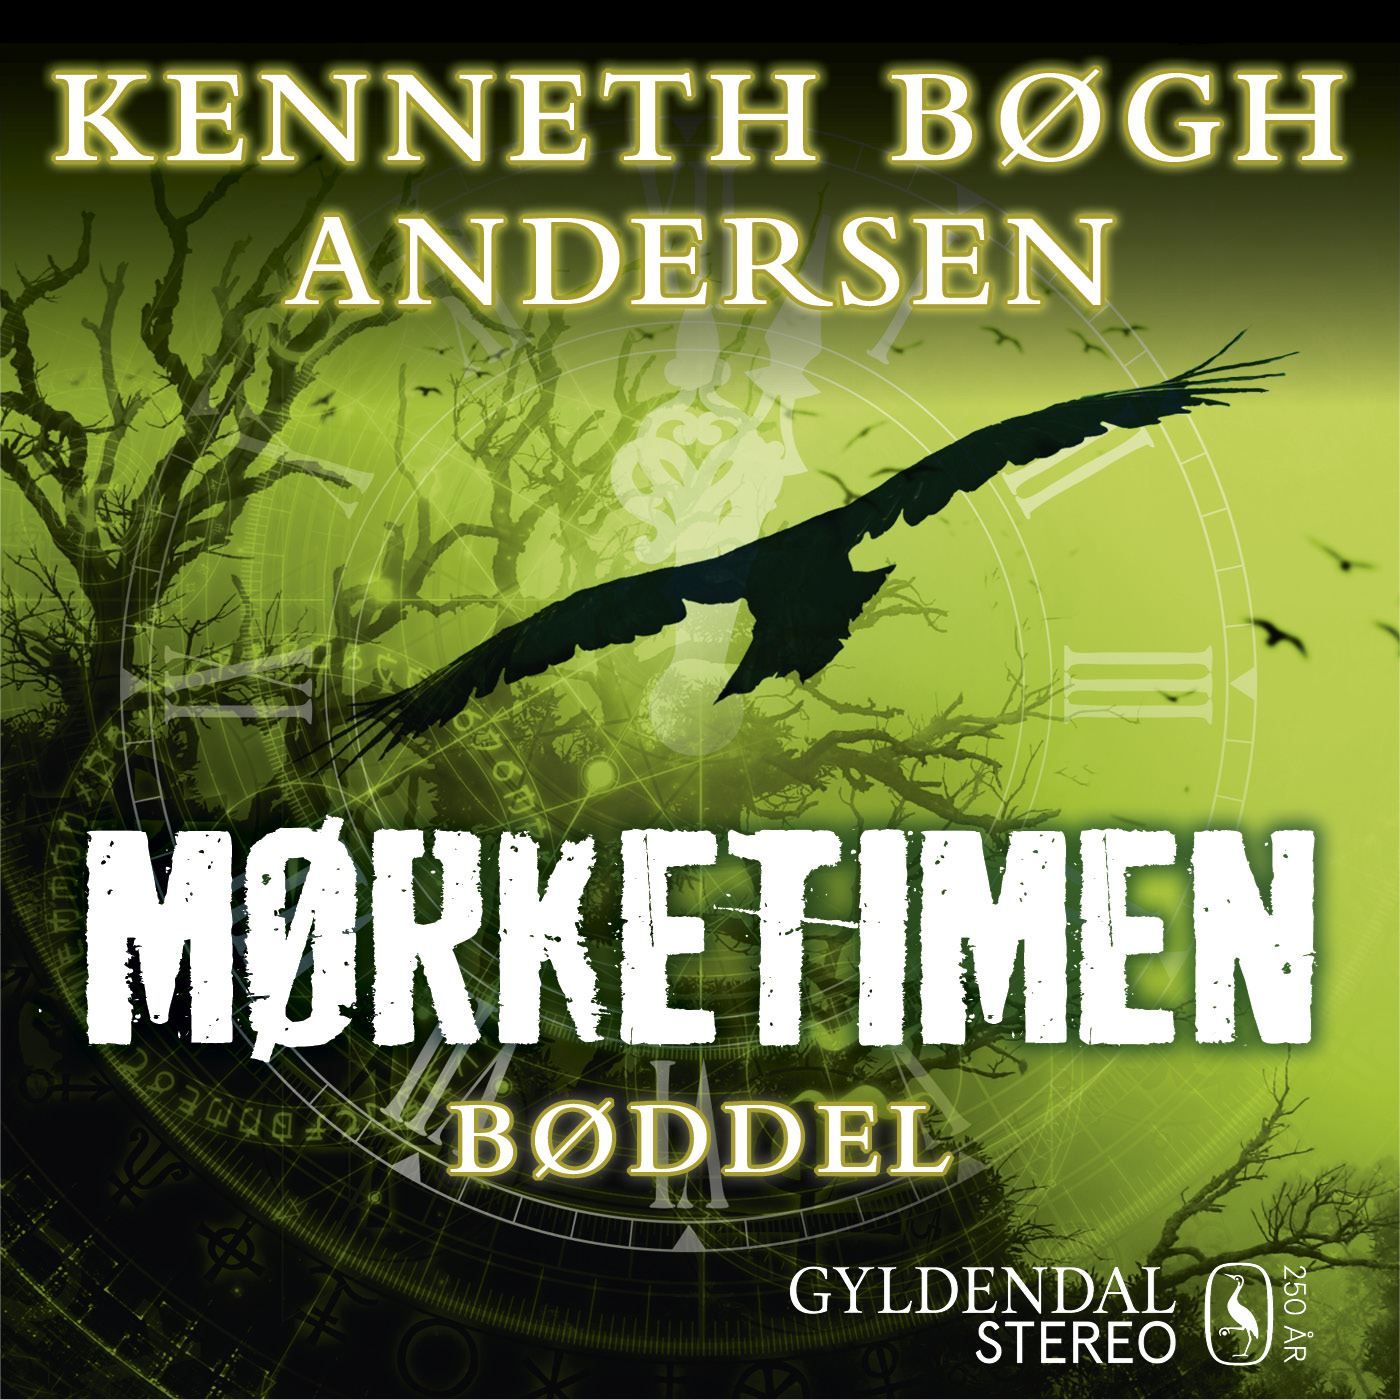 Mørketimen - Bøddel, audiobook by Kenneth Bøgh Andersen